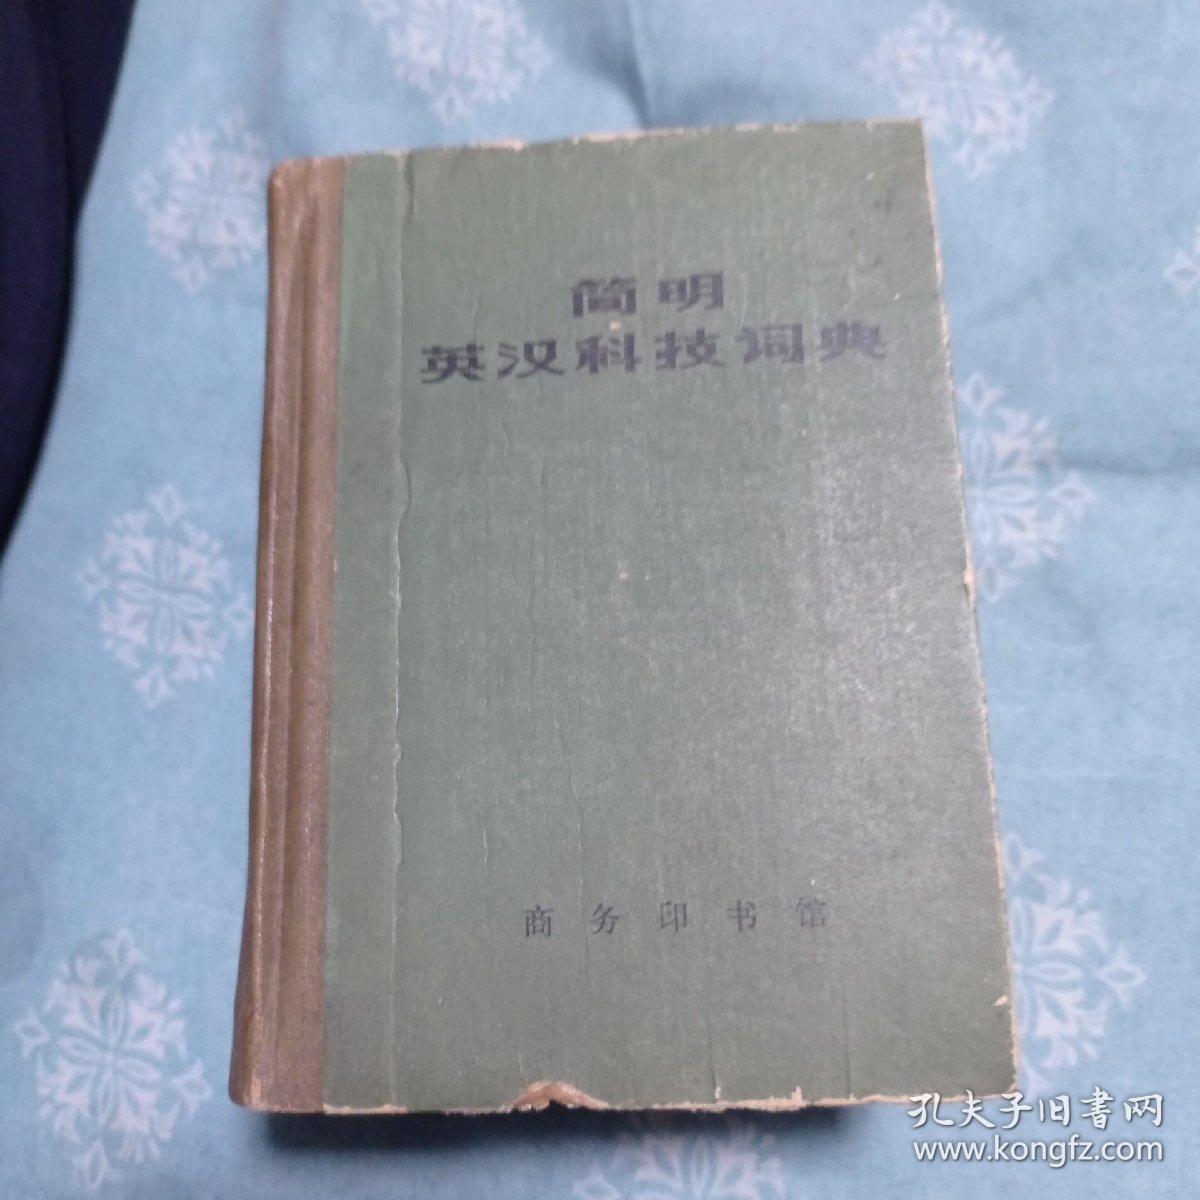 简明英汉科技词典。15包邮。